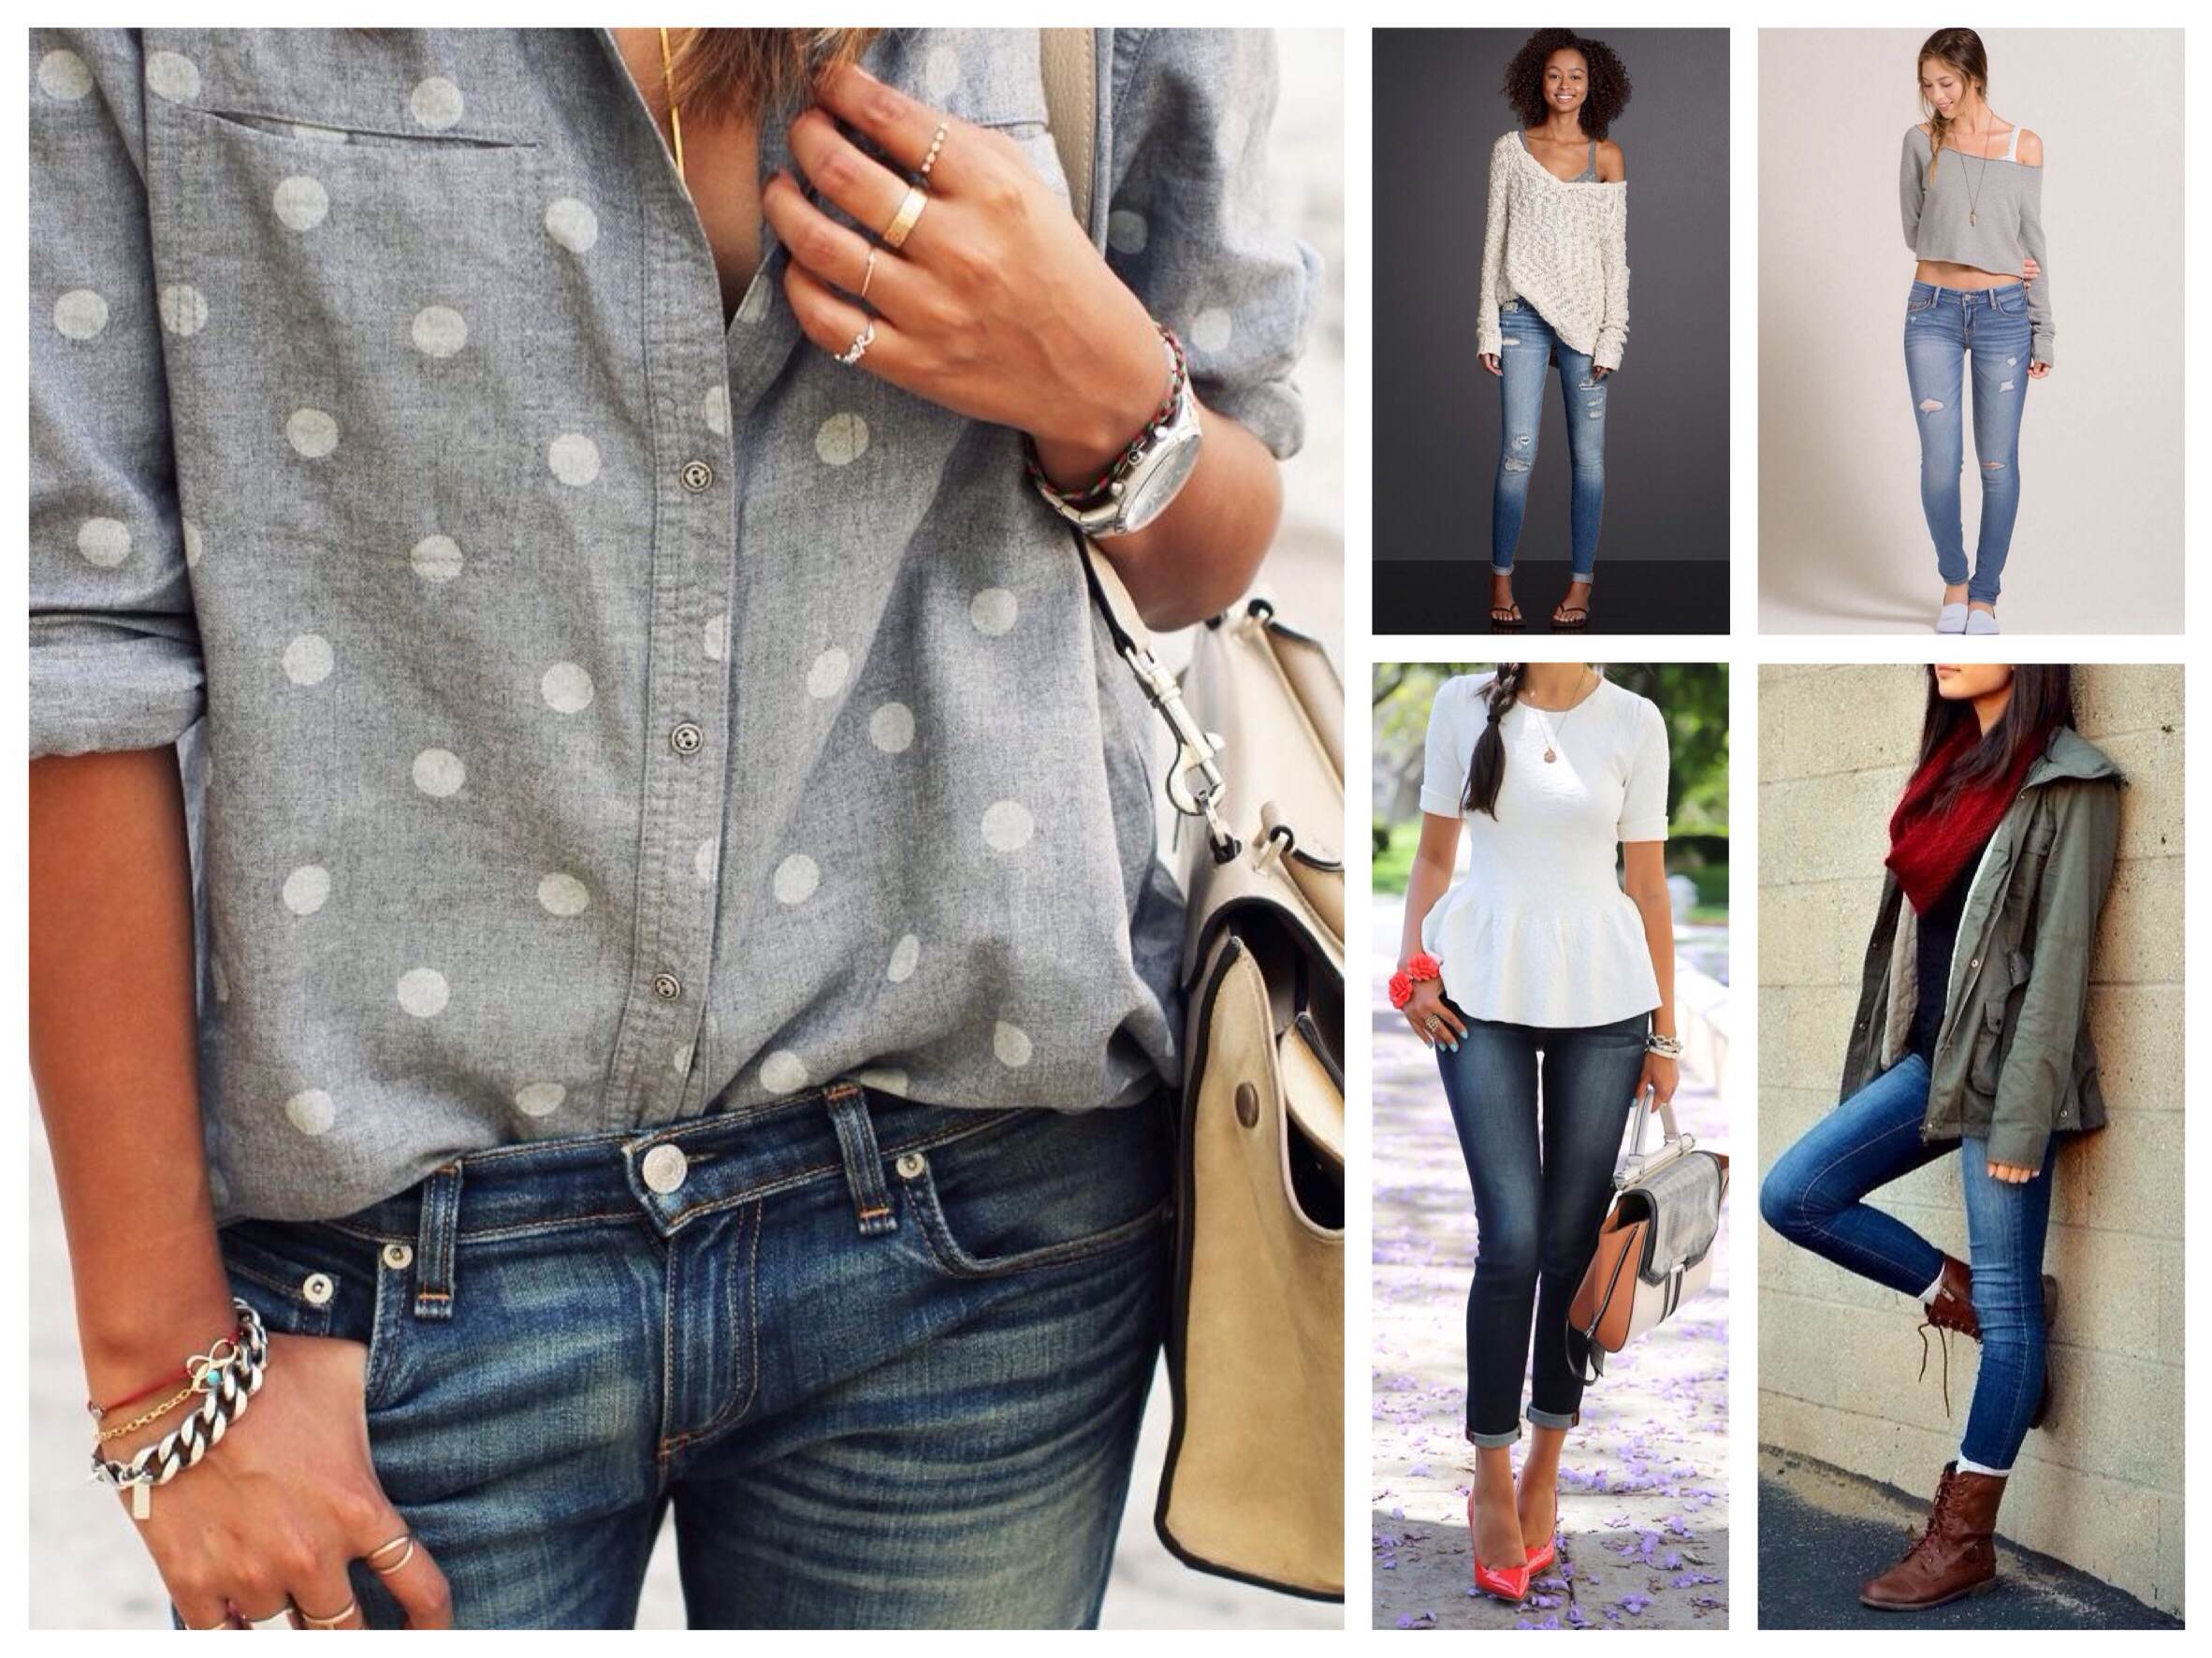 Узкие джинсы в различных комплектах